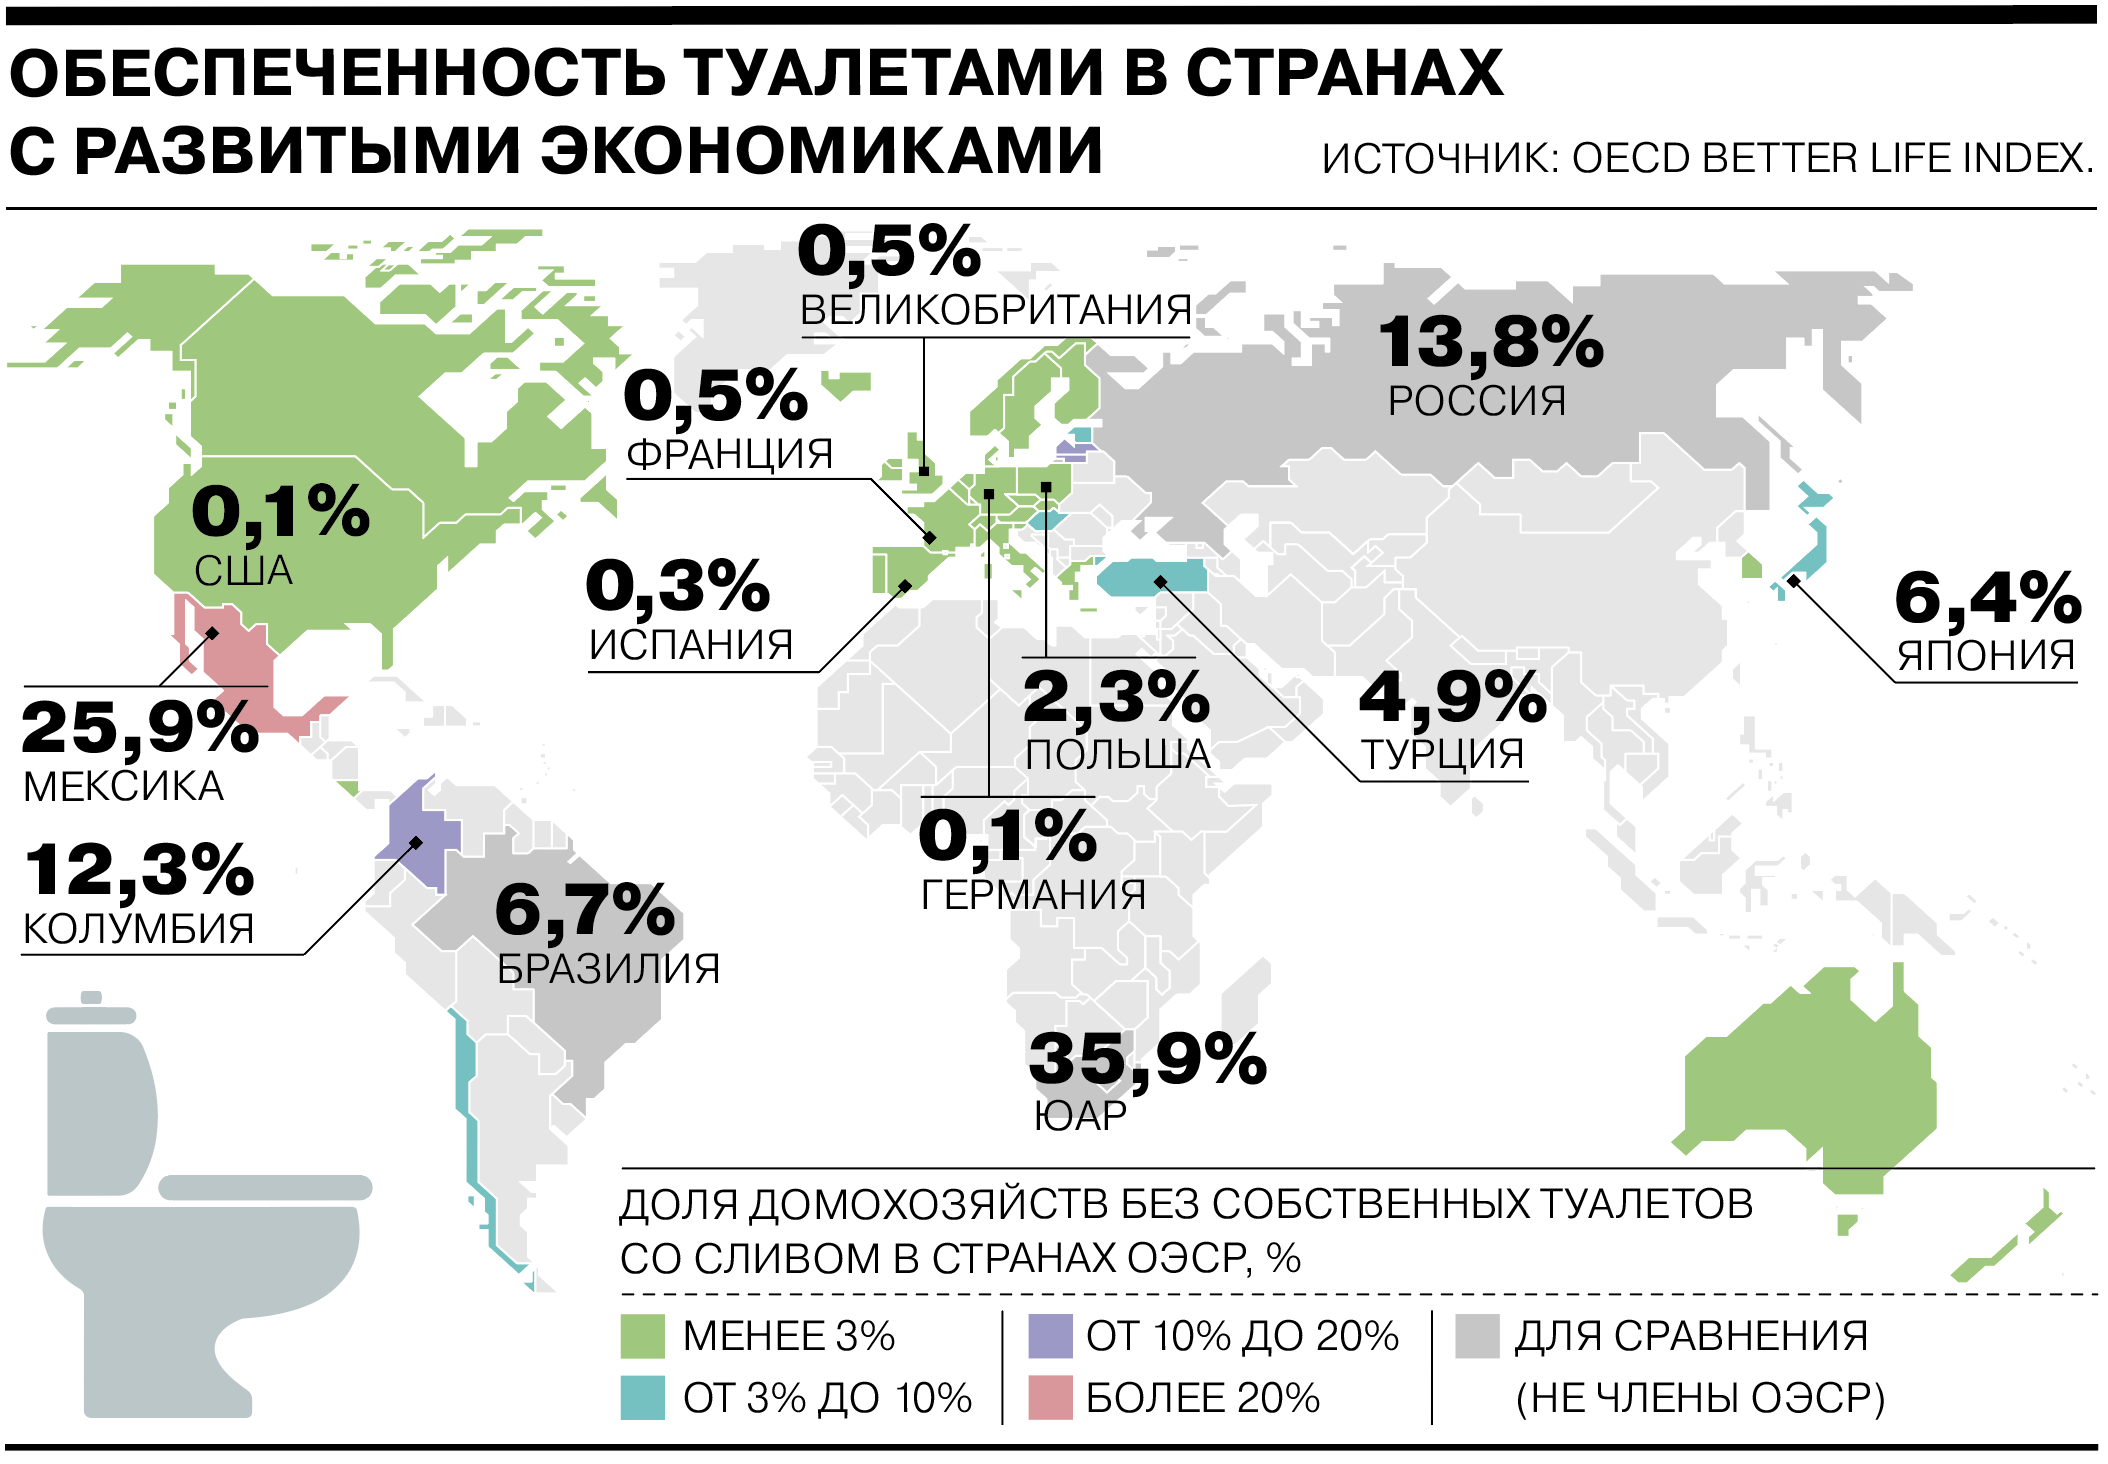 Сколько людей проживает в россии 2024 году. Обеспеченность туалетами в мире. Страны с развивающейся экономикой. Туалеты в разных странах.